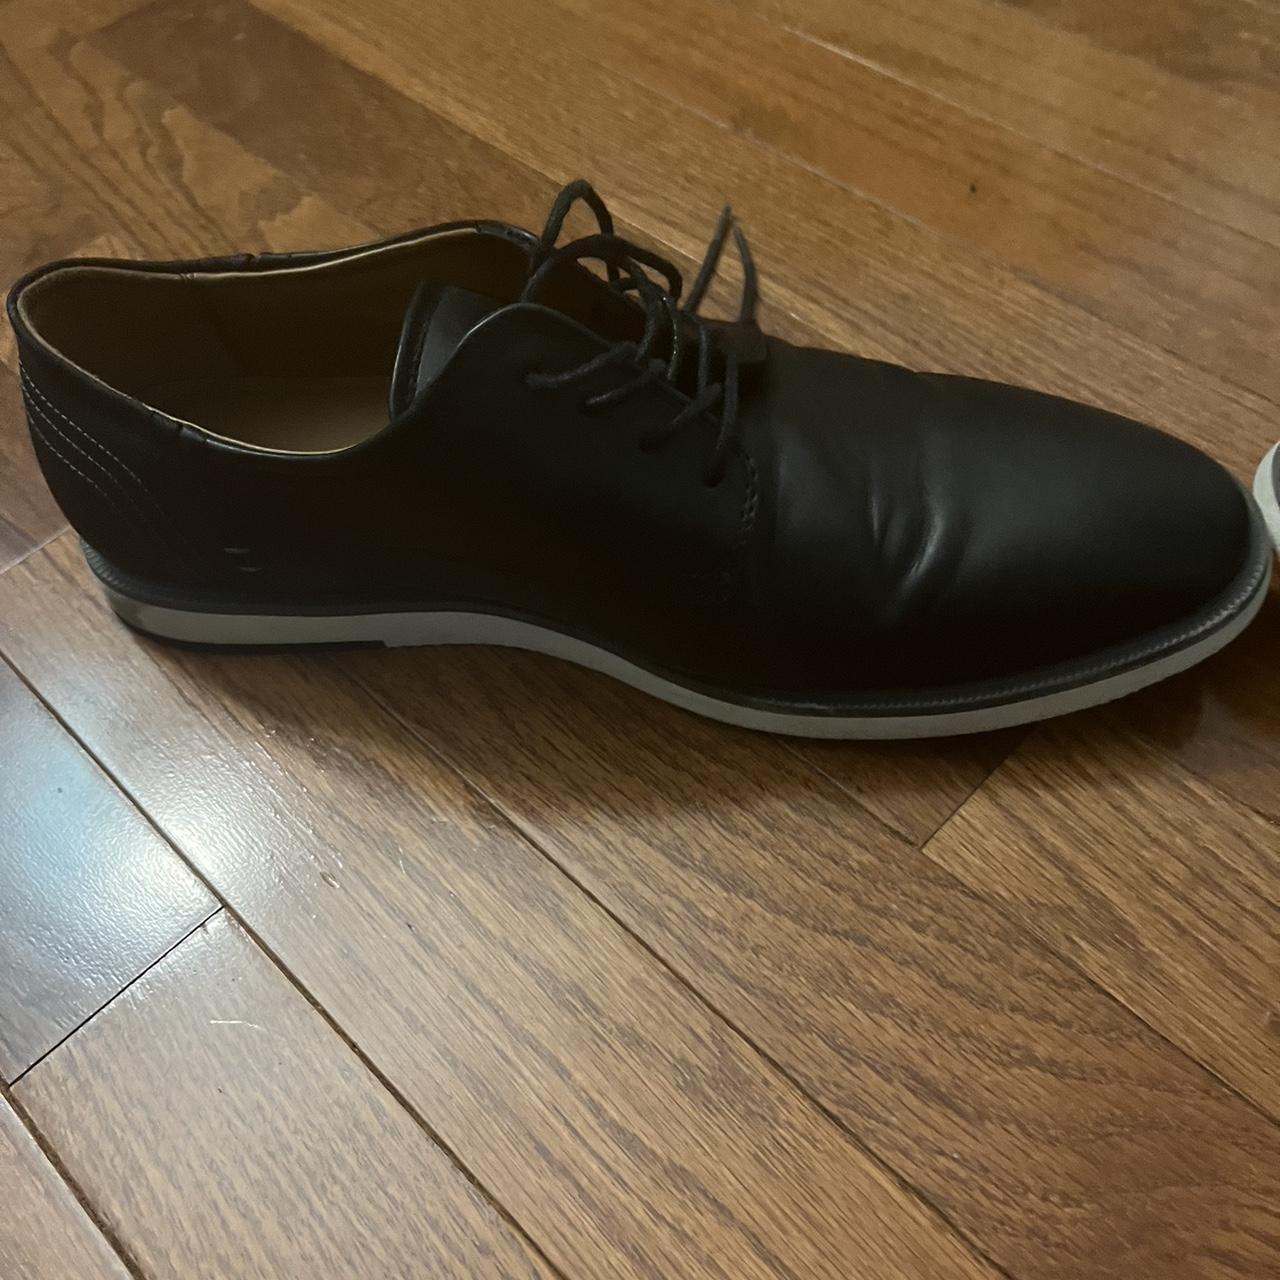 Seven 91 Luxury Benadair Oxford shoes Men Size... - Depop